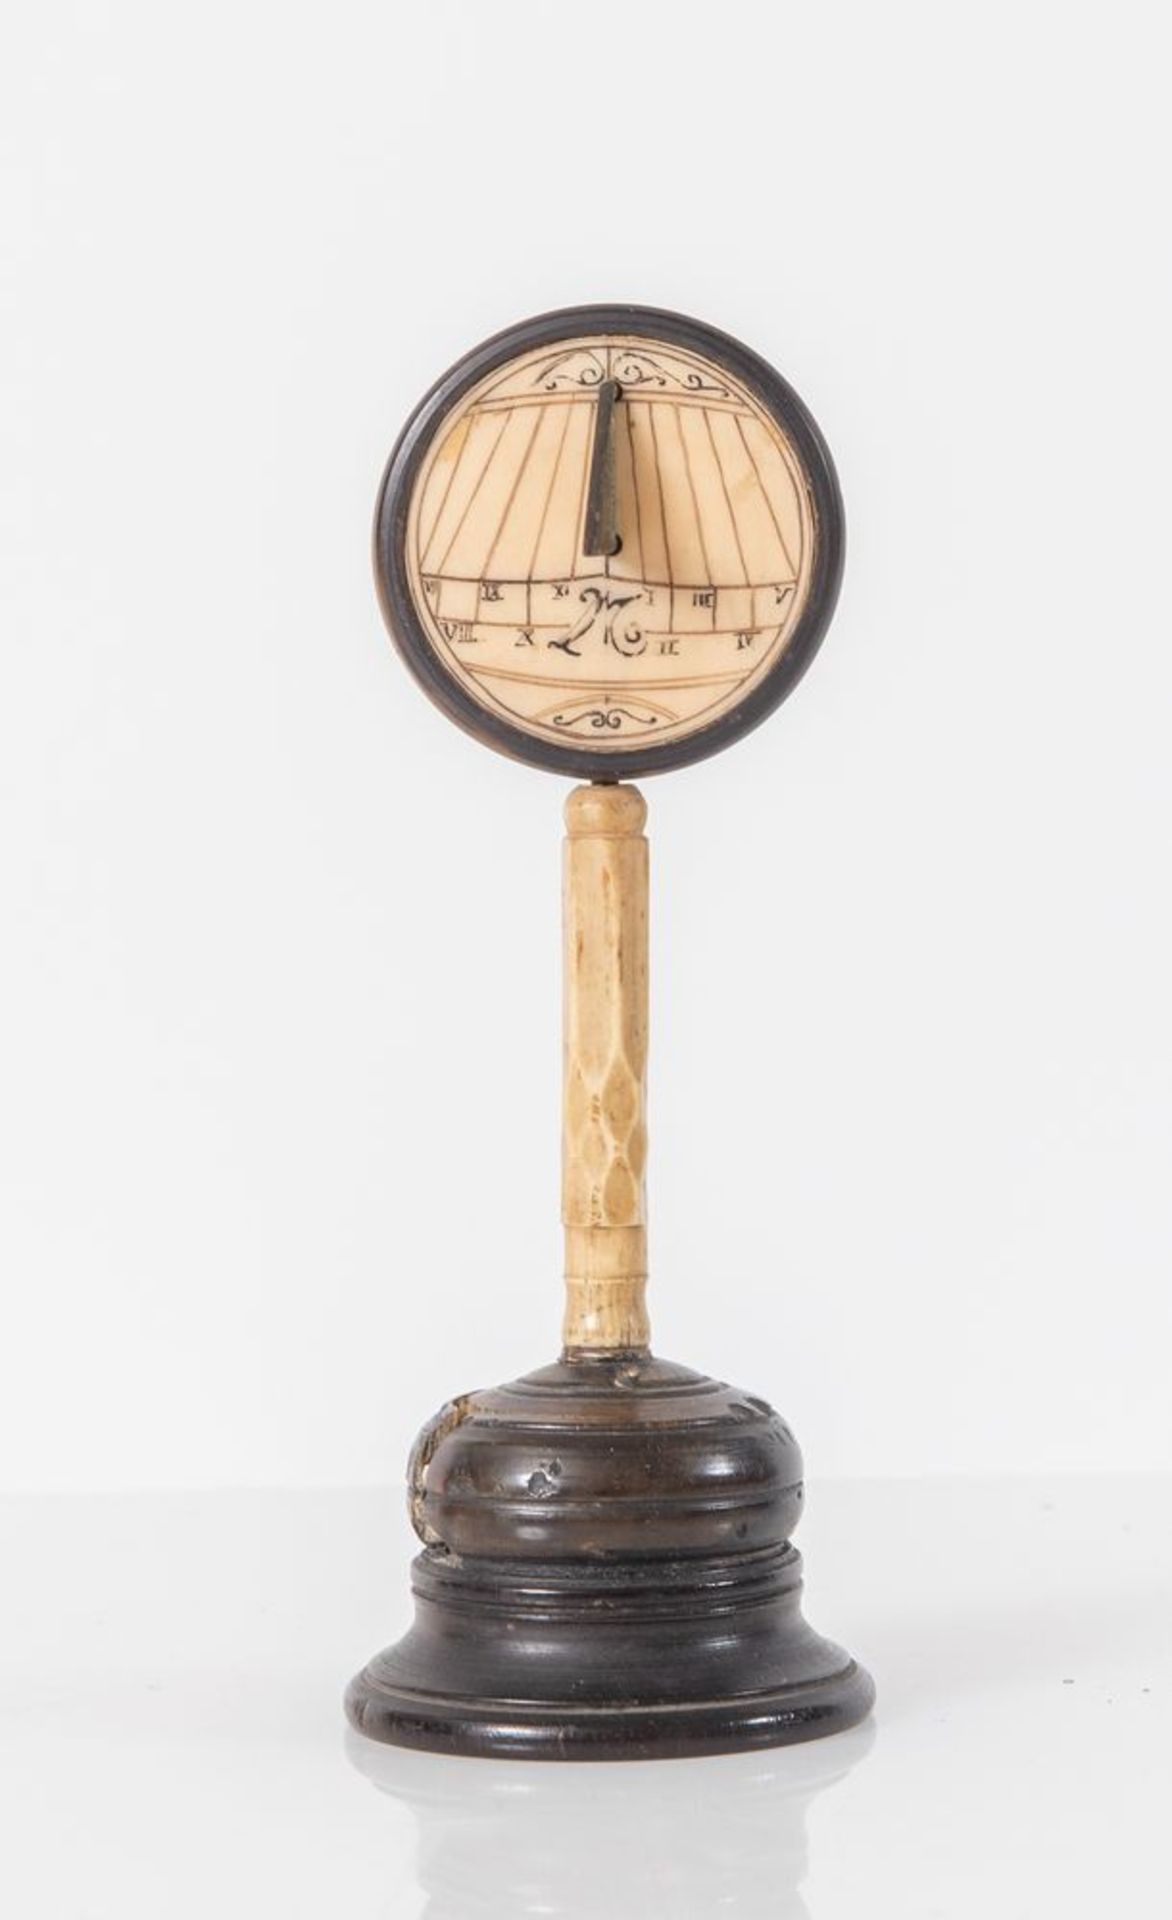 Orologio solare in ebano e materiale prezioso. Fine del XVI secolo - inizi del XVII secolo. Cm